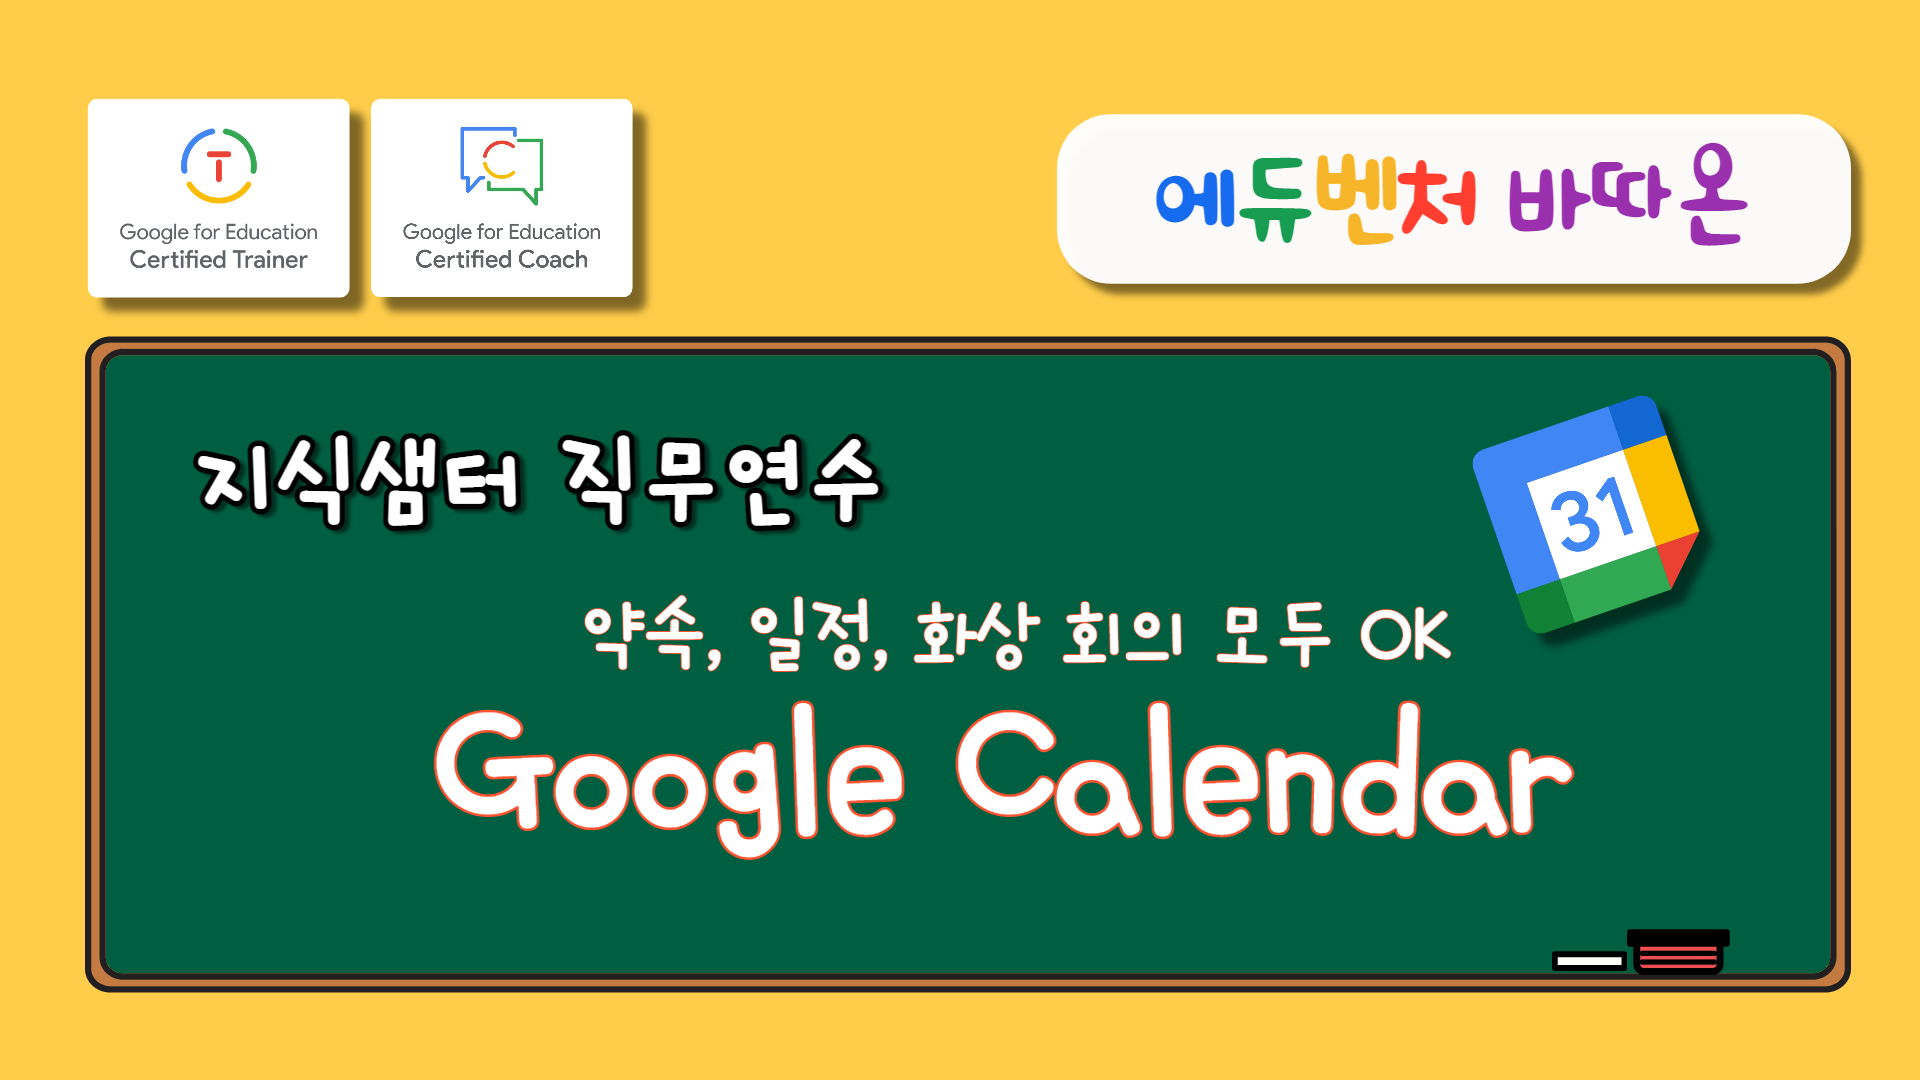 [에듀벤처 바따온] 약속, 일정, 화상회의 모두 OK 'Google Calendar' 수강 신청